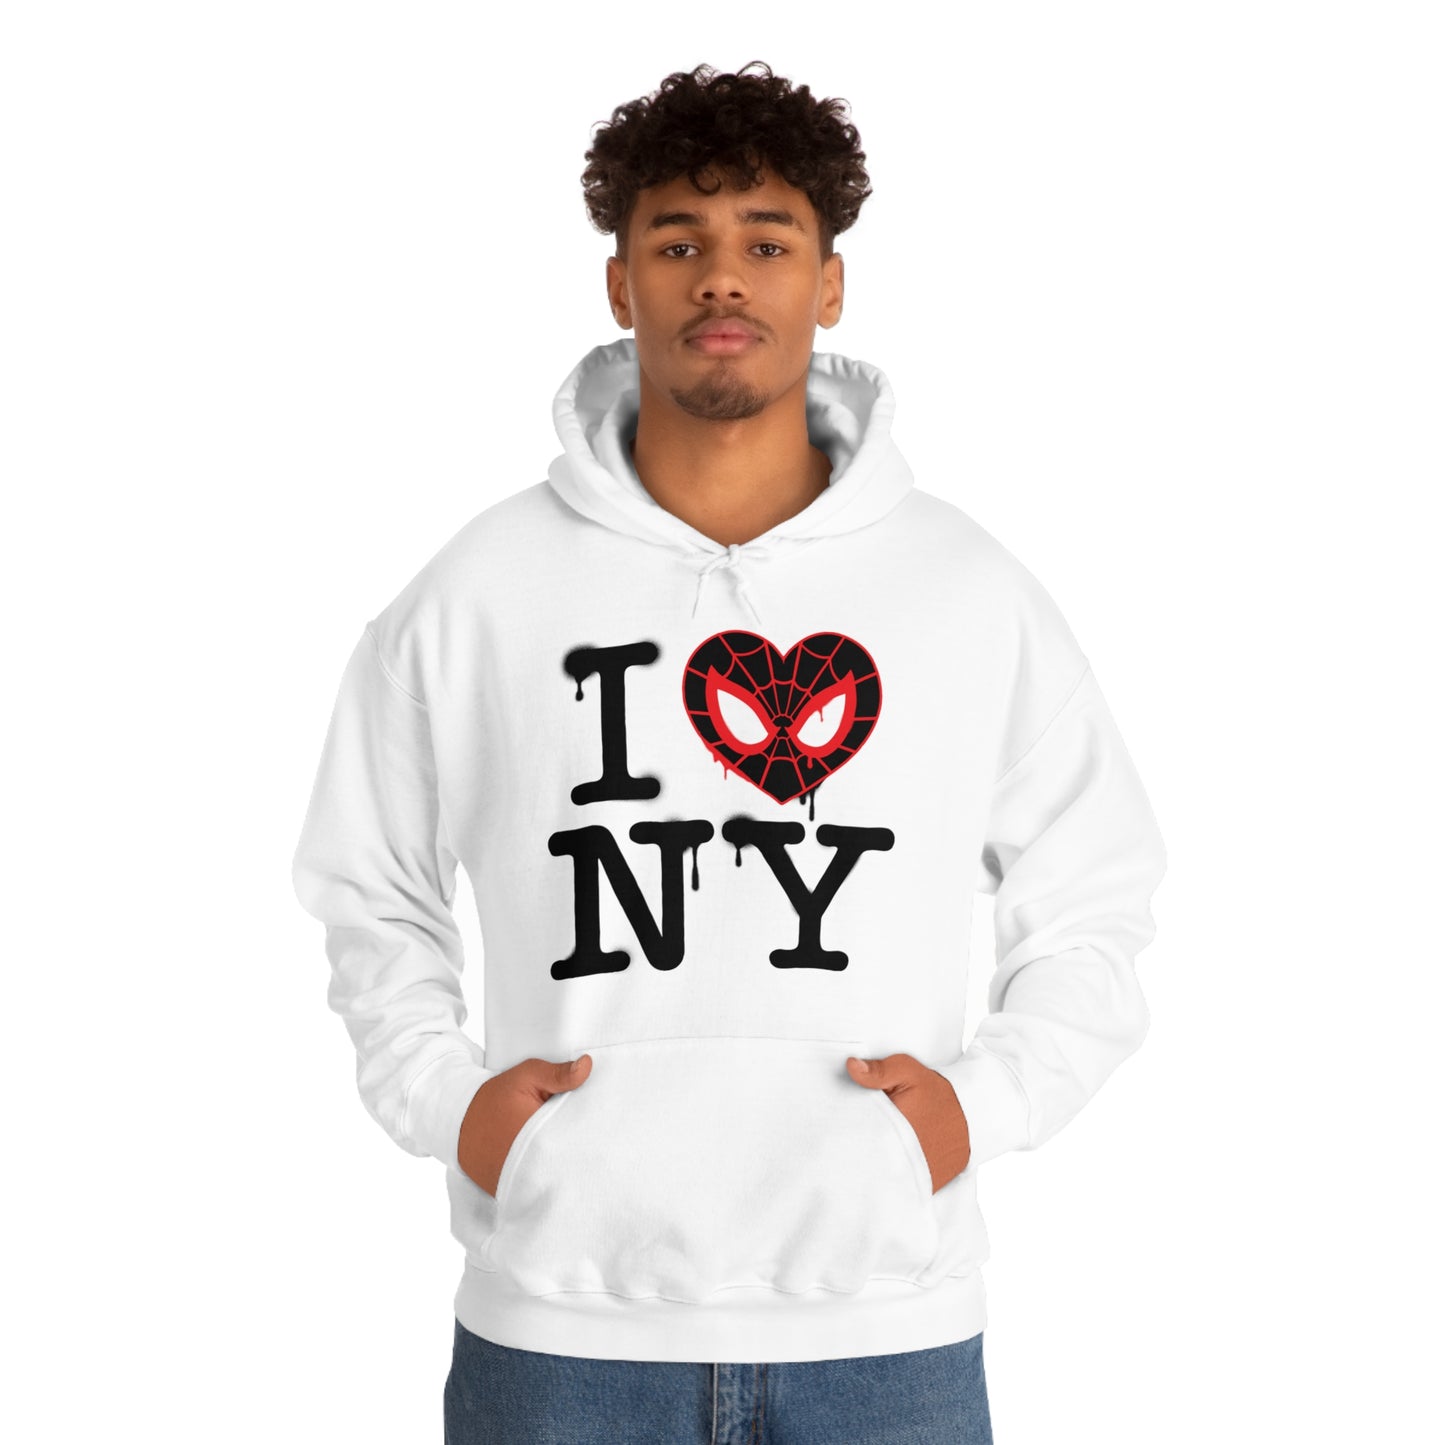 I Miles NY hooded sweatshirt